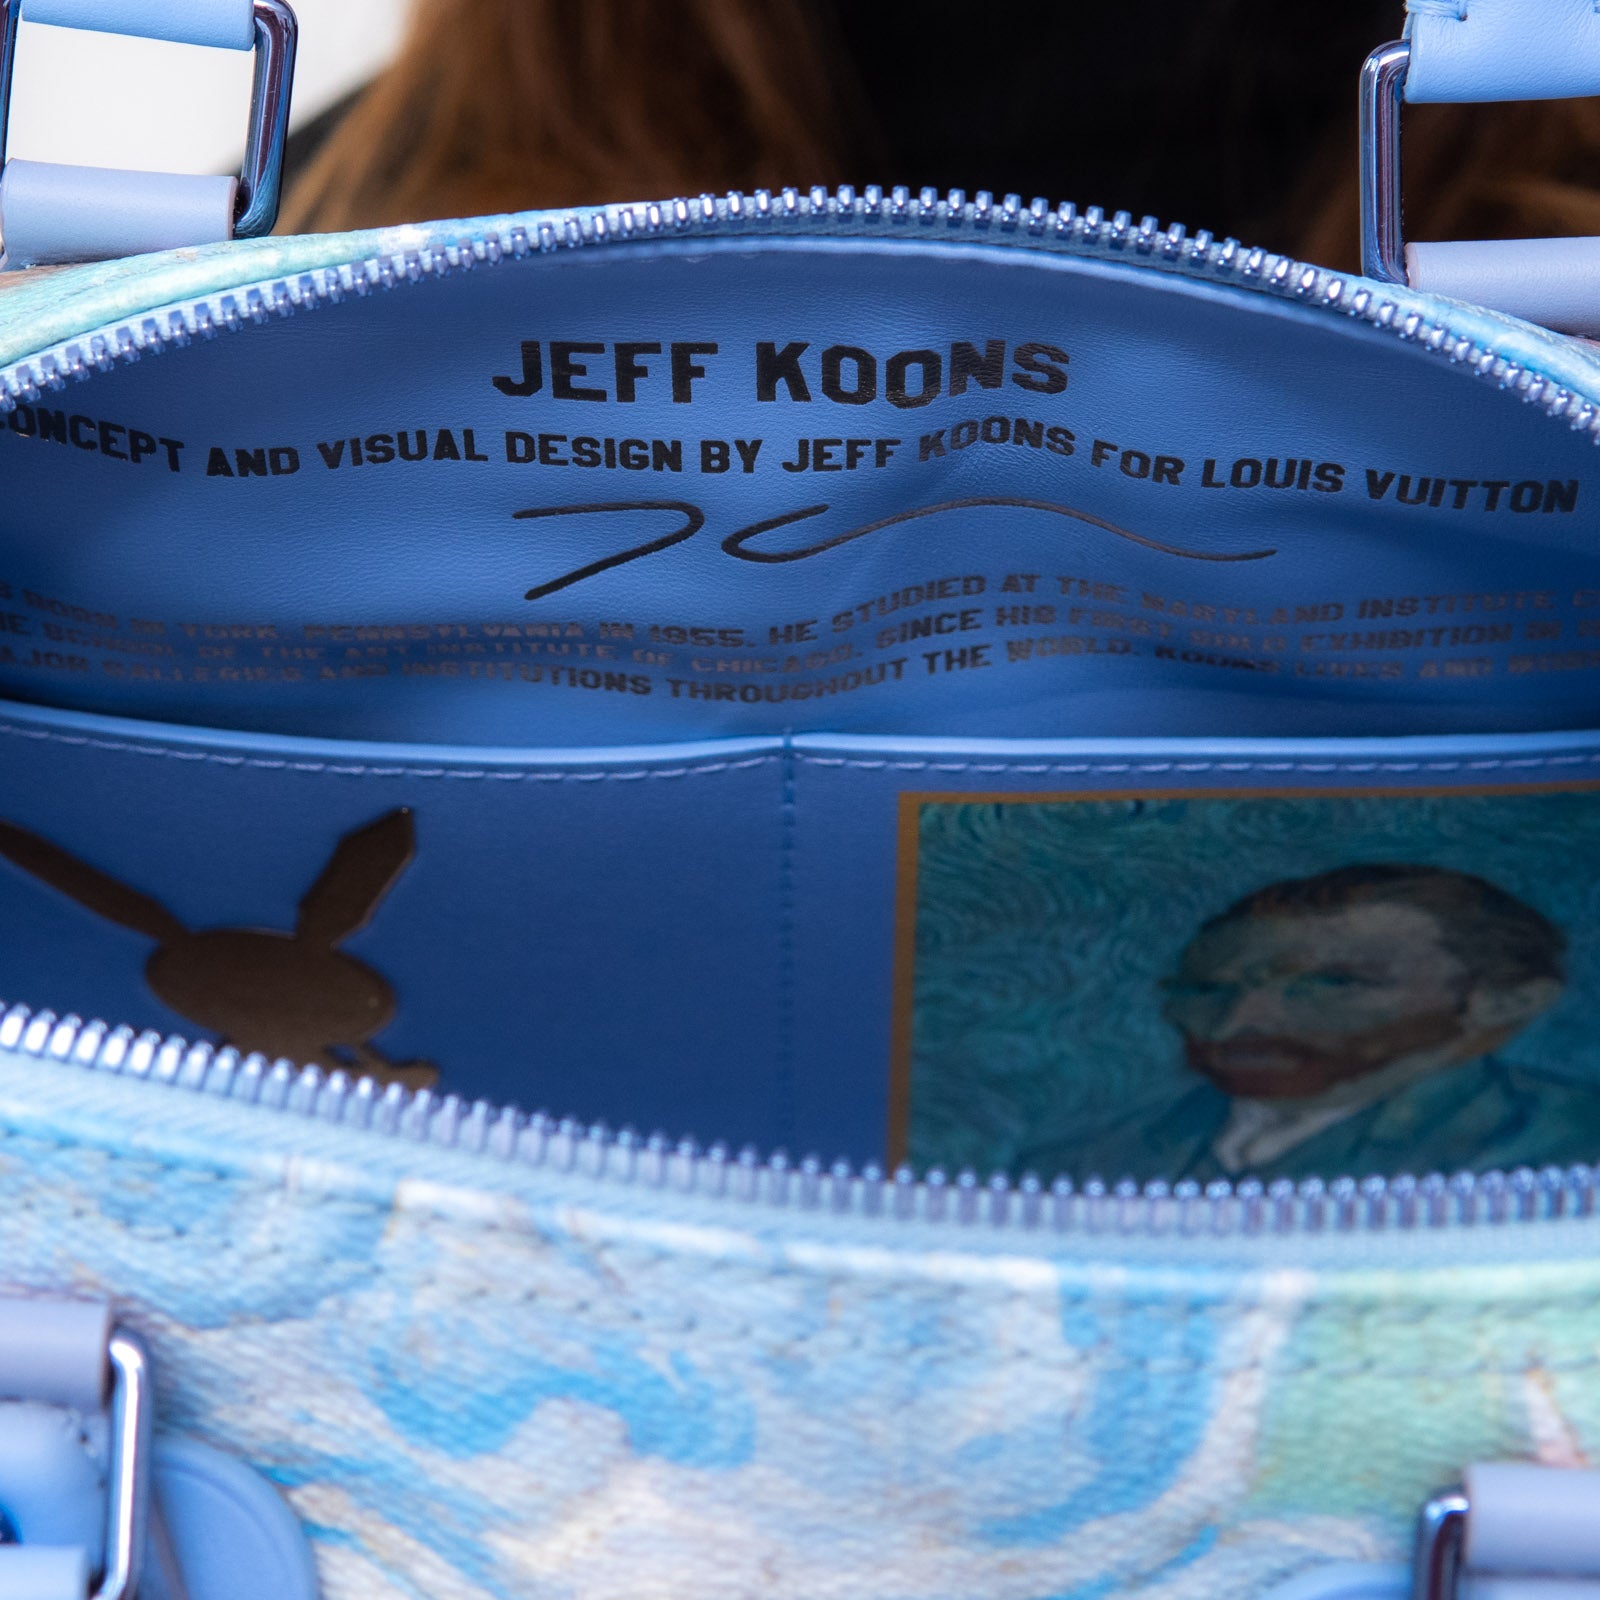 Louis Vuitton x Jeff Koons - Vincent Van Gogh Limited Edition Blue